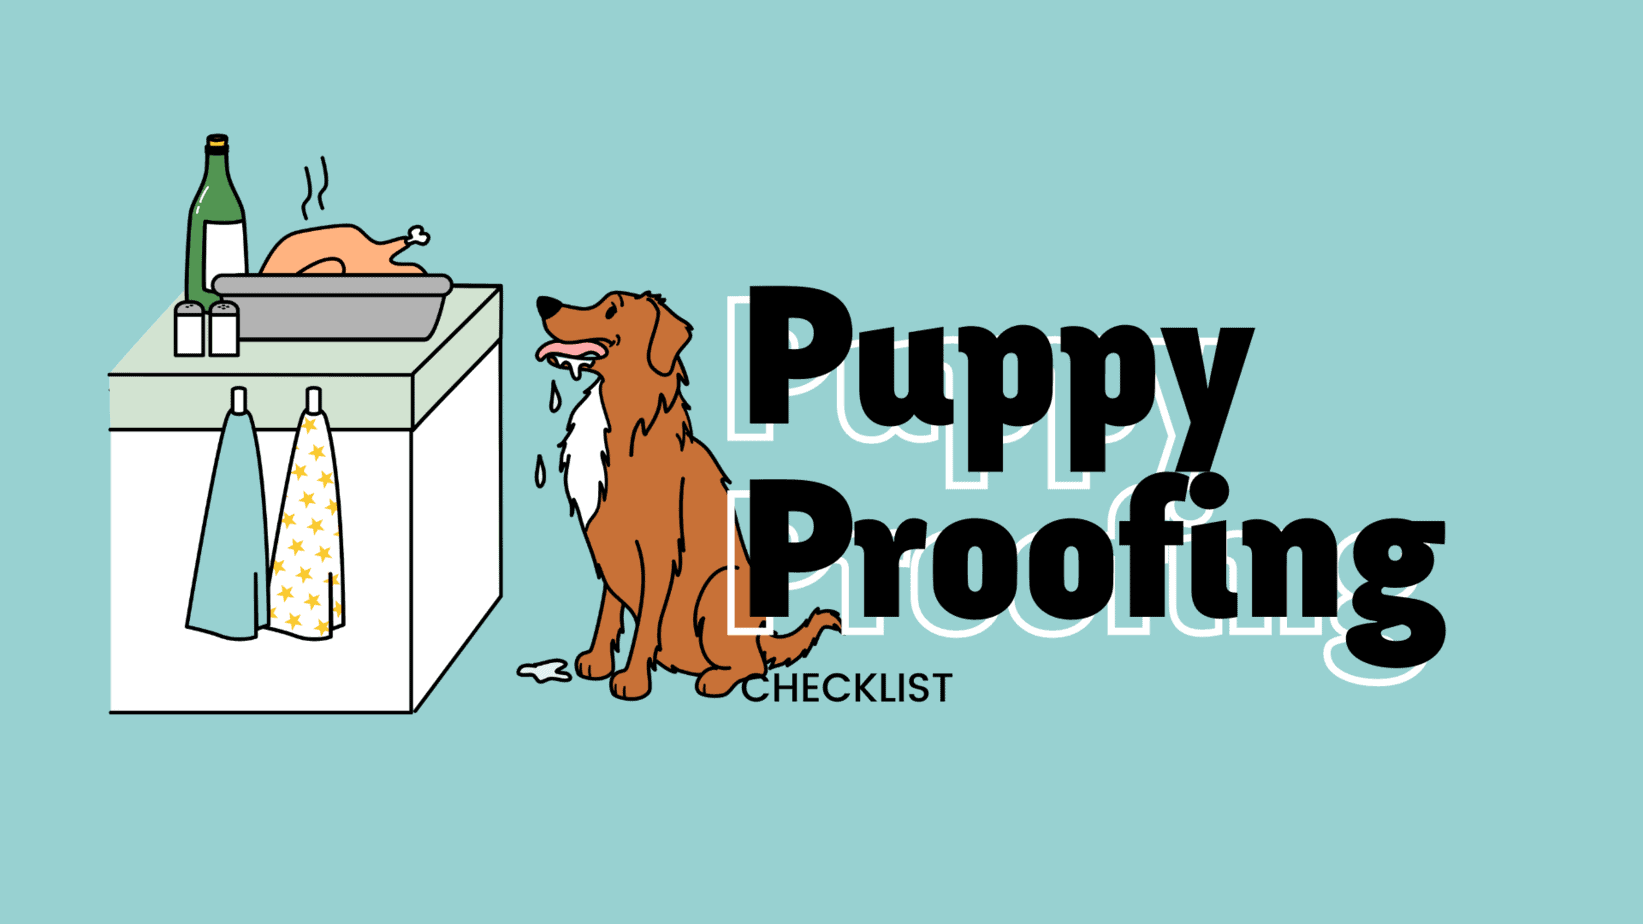 Puppy Proofing Checklist header